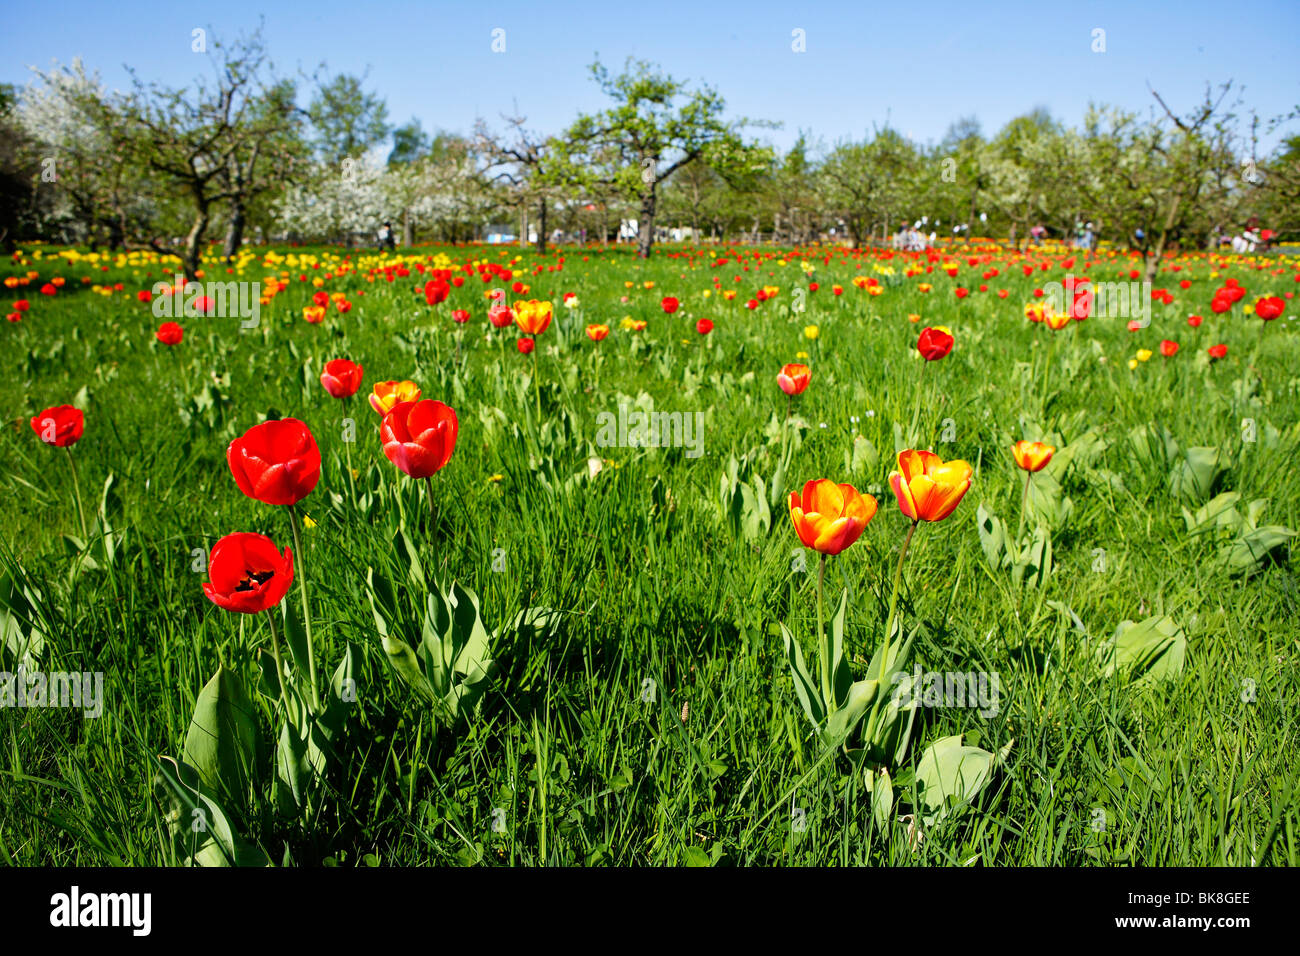 Tulipan, tulips bloom in the Britzer Garten park in Berlin, Germany, Europe Stock Photo